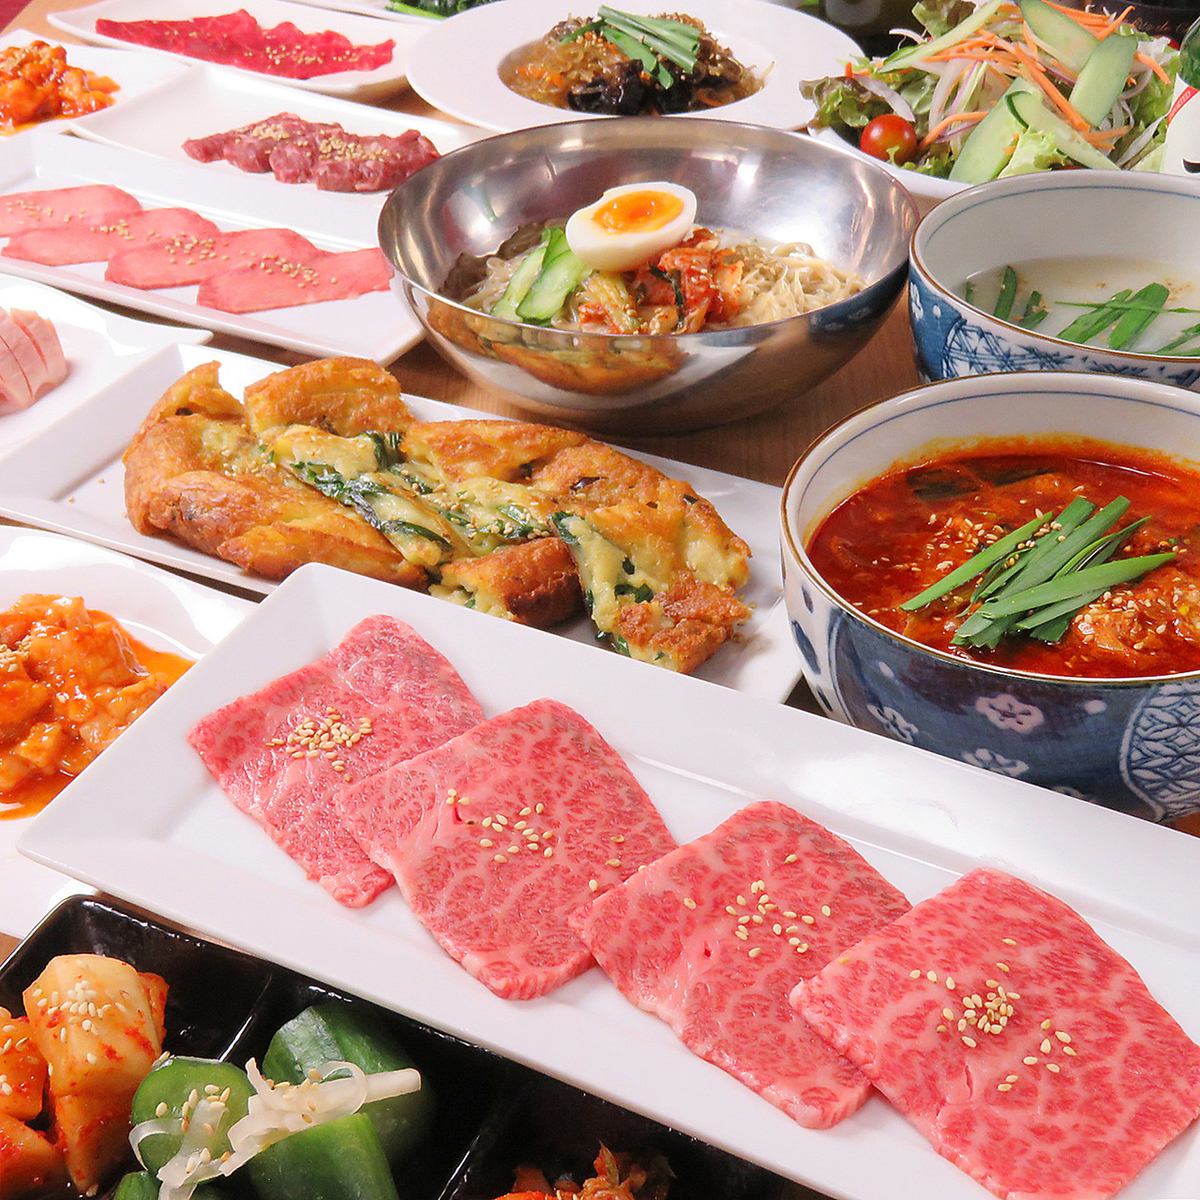 엄선한 야키니쿠 & 본고장의 한국 요리를 즐길 수있는 가게 ◎ 음료 무제한도 있습니다! 폭넓은 용도에 ◎